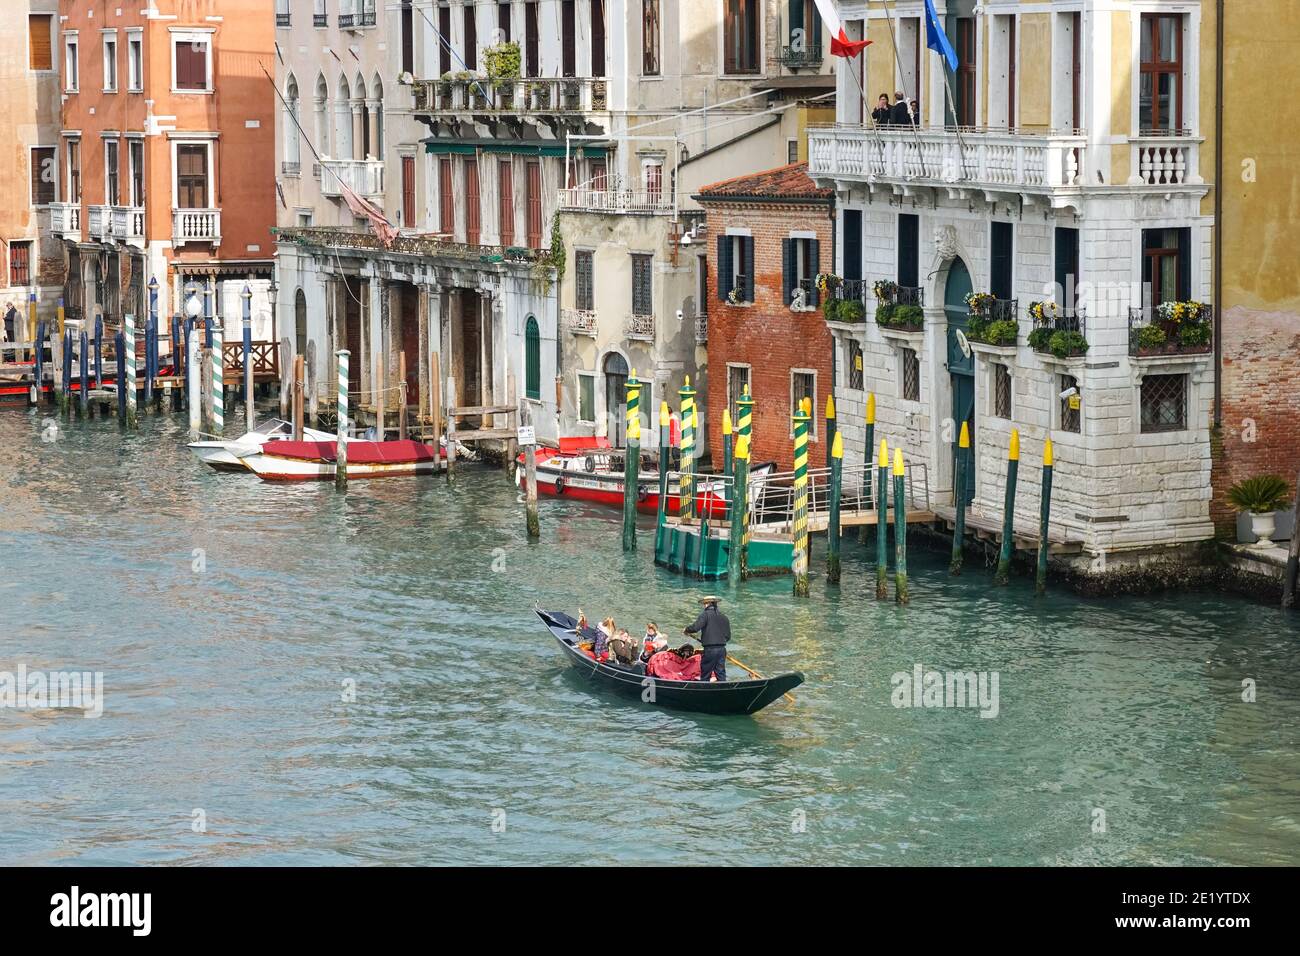 Gondole vénitienne traditionnelle, gondoles avec touristes sur le Grand Canal à Venise, Italie Banque D'Images